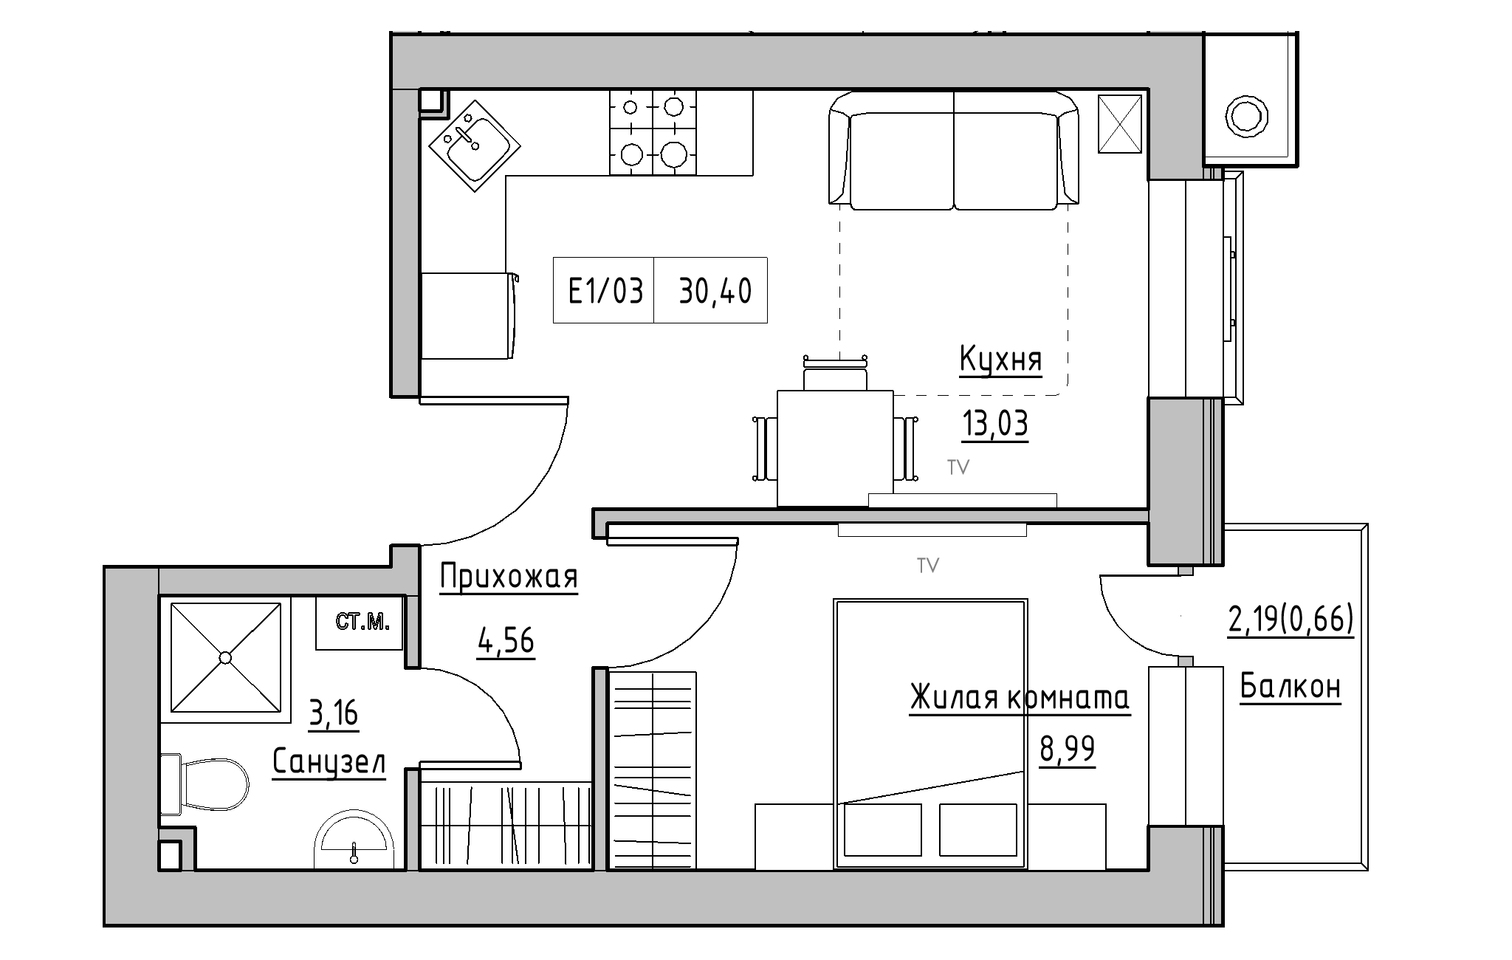 Планировка 1-к квартира площей 30.4м2, KS-013-02/0002.